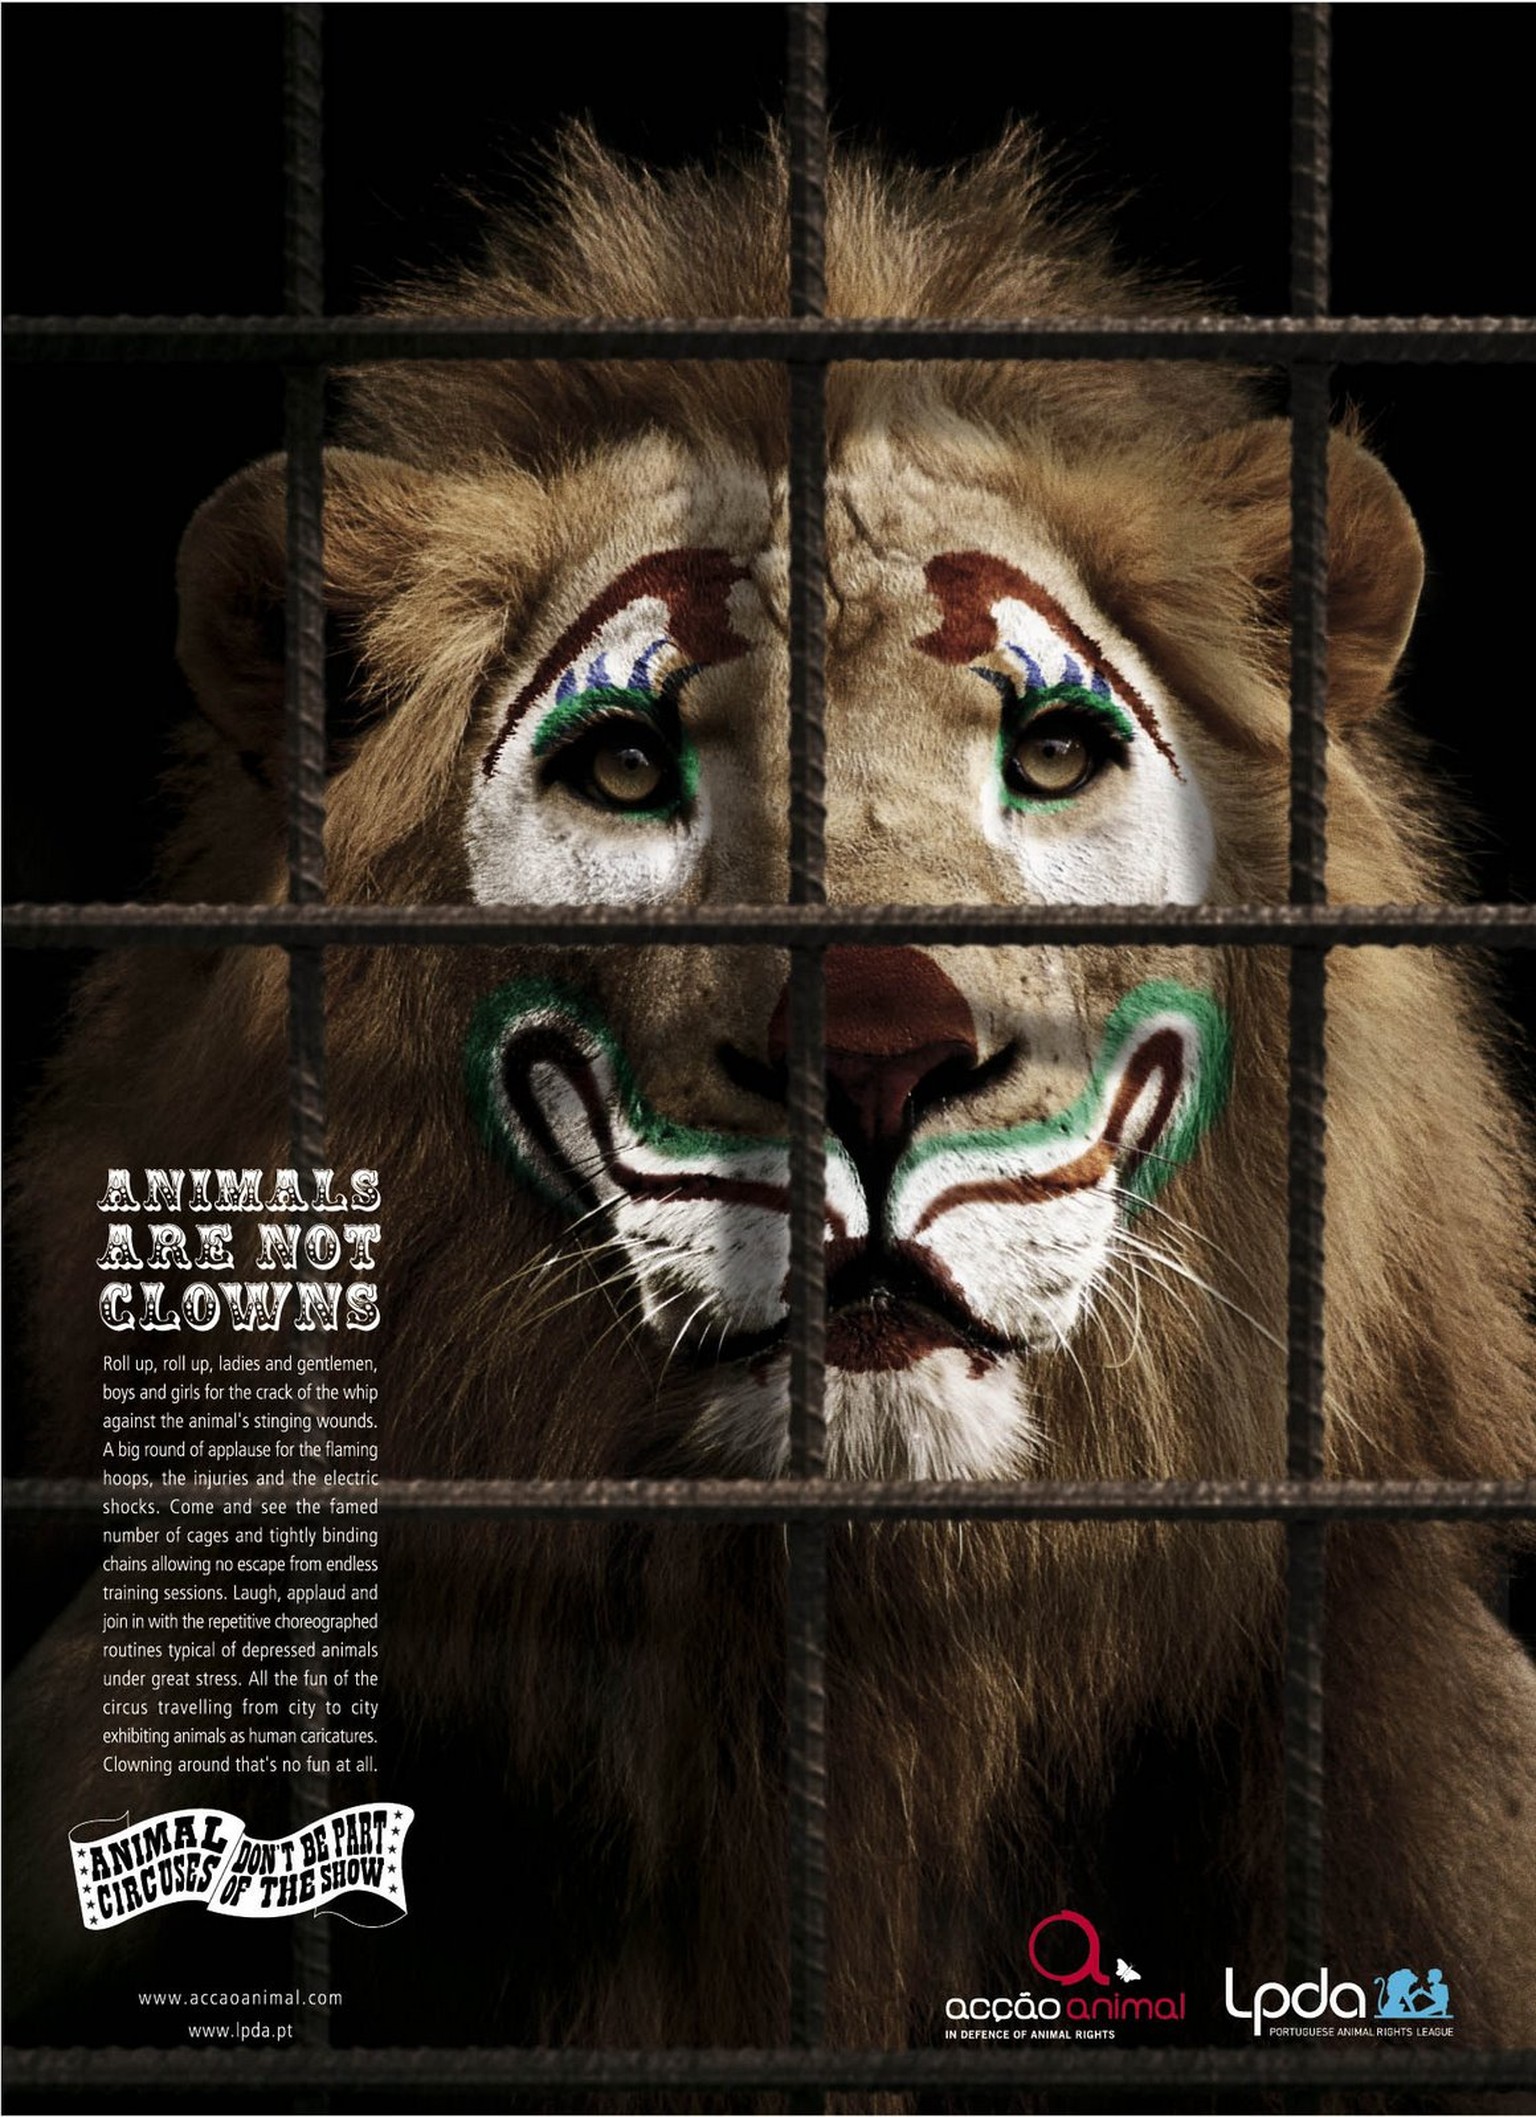 «Animals are not Clowns» ist eine Kampagne der beiden portugiesischen Tierschutzvereine «Liga Portuguesa dos Direitos do Animal» (LDPA) und&nbsp;«Acção Animal». Sie wollen auf die schlechten Lebensbedingungen von Zirkustieren aufmerksam machen.&nbsp;